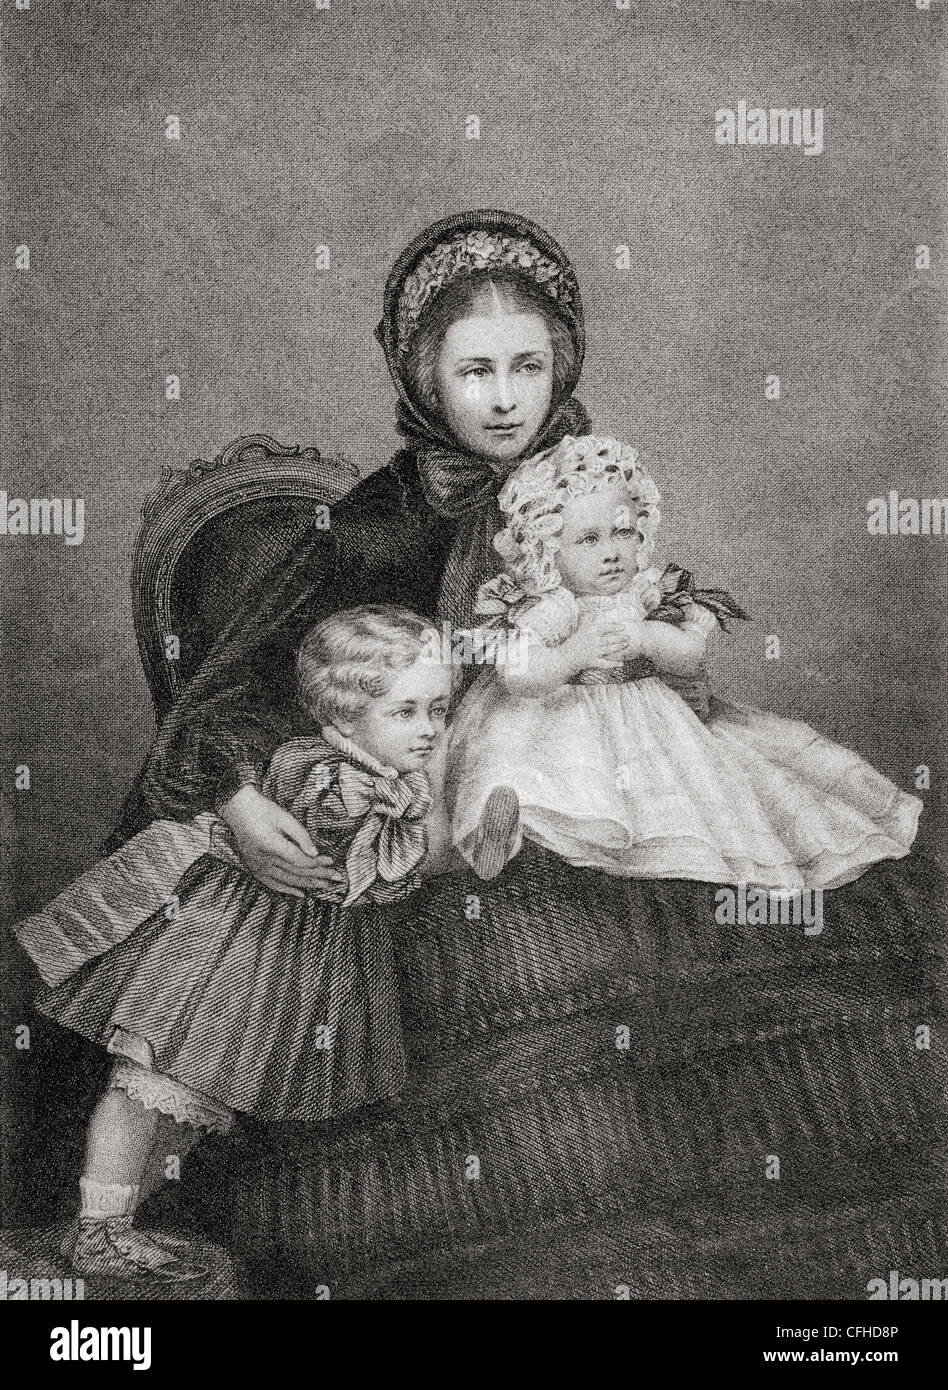 Victoria, princesse royale, 1840 - 1901. L'Impératrice allemande et Reine de Prusse comme consort de l'empereur allemand Frédéric III. Banque D'Images